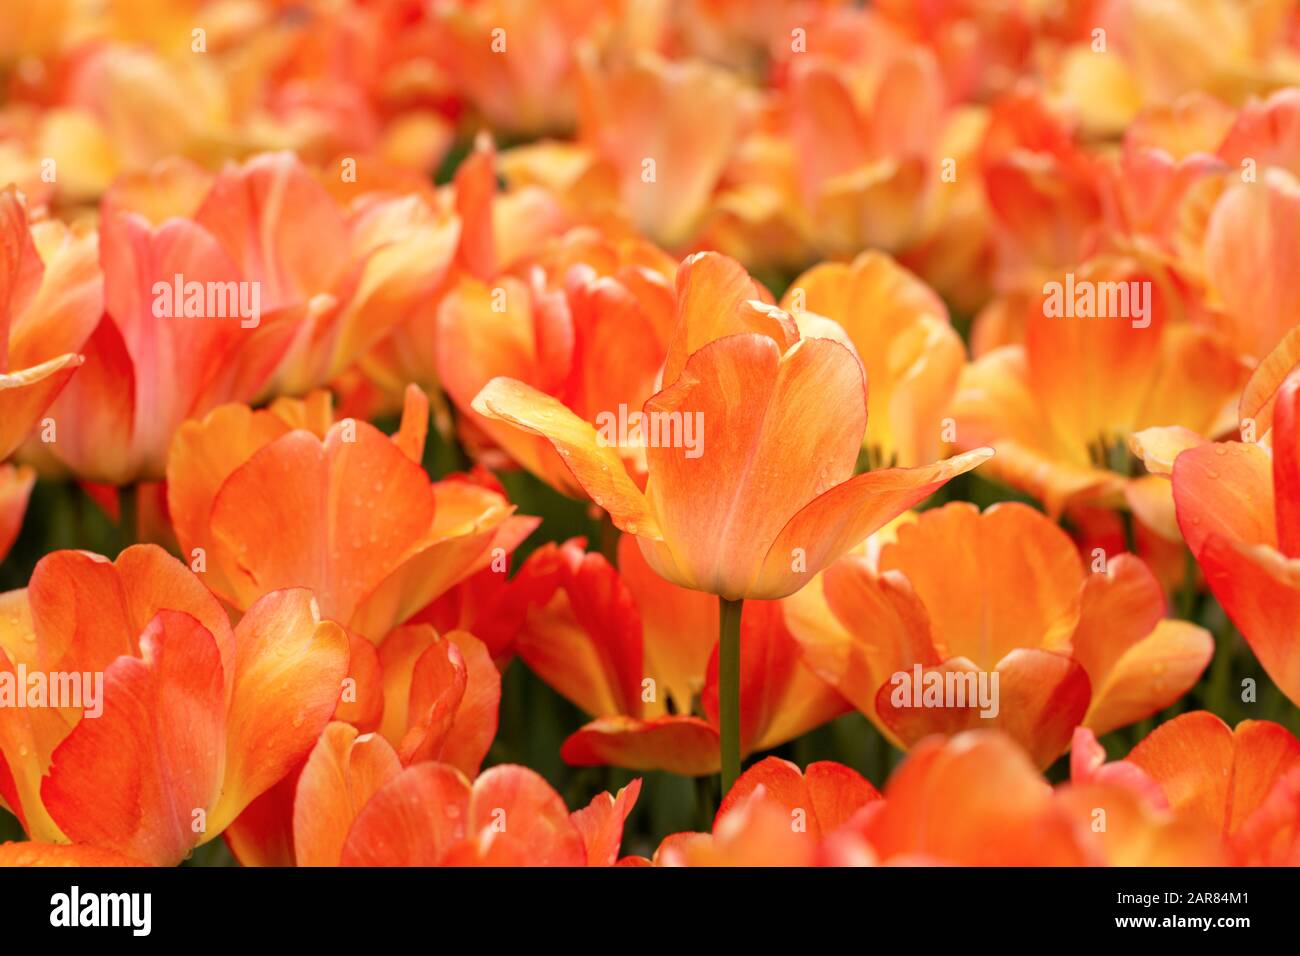 Tulipani arancione-giallo nel giardino. Gocce di pioggia sui petali di fiori. Una cornice vivace ed energizzante. Foto Stock